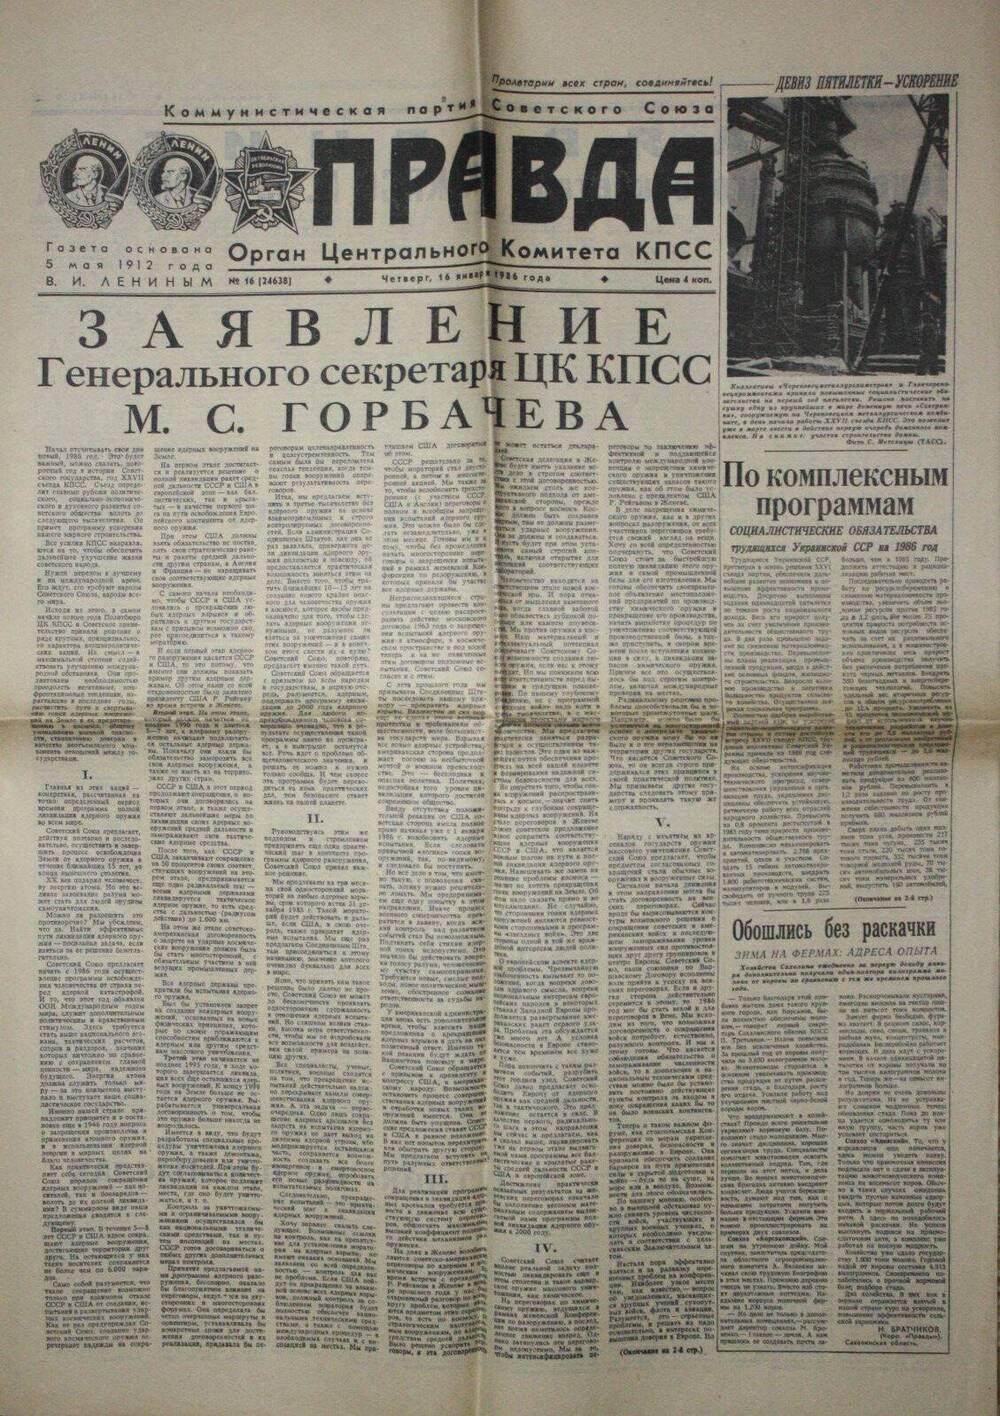 Газета Правда от 16.01.1986 г